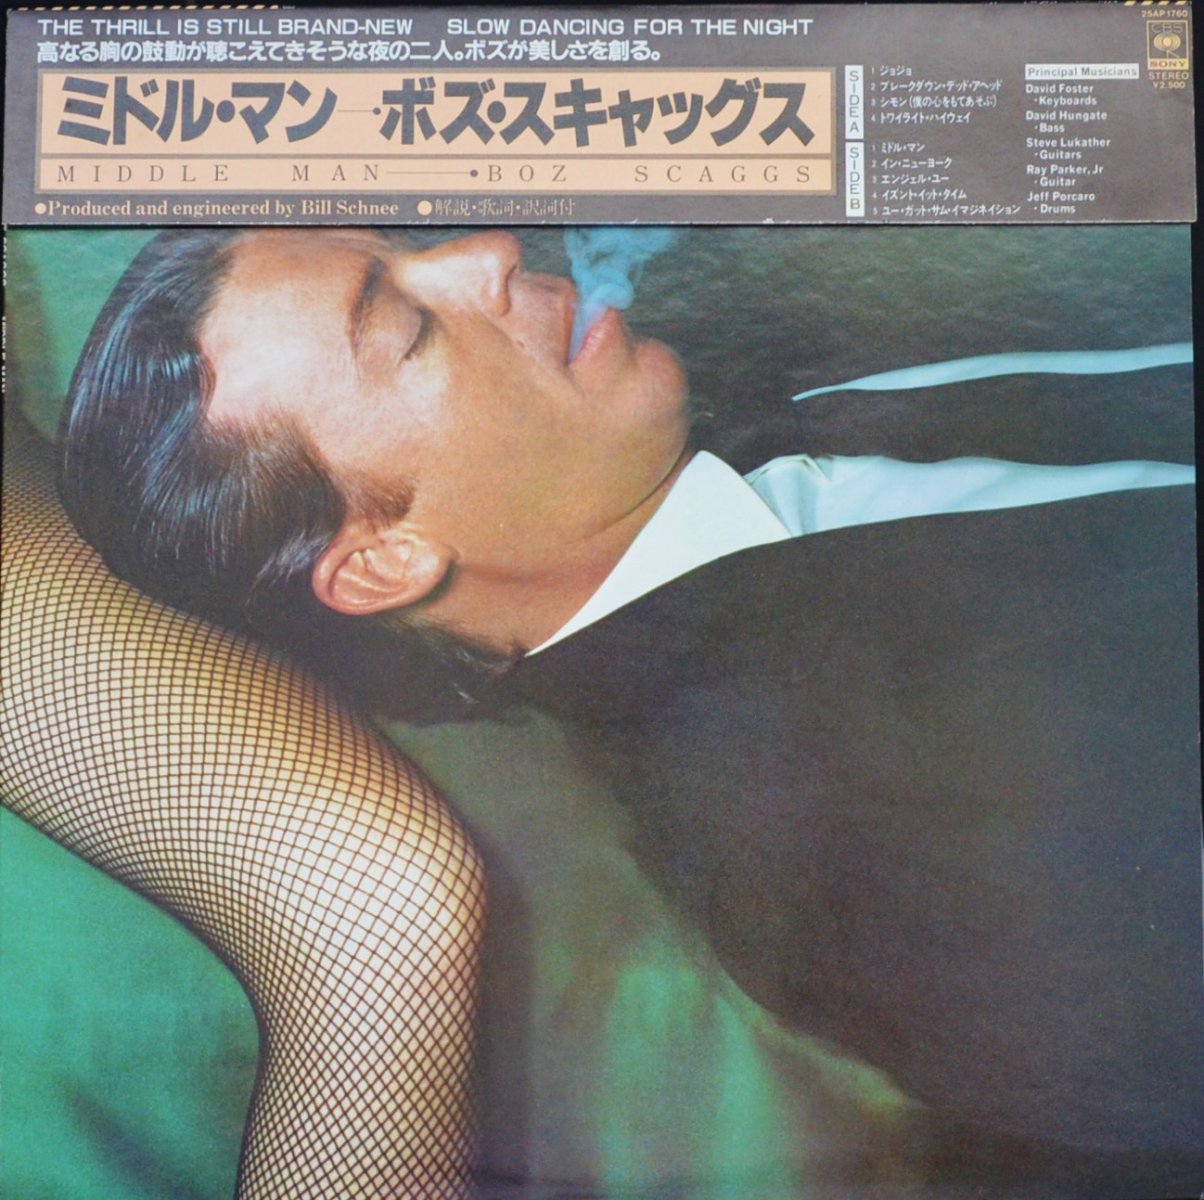 ボズ・スキャッグス／ミドル・マン LPレコード - 洋楽